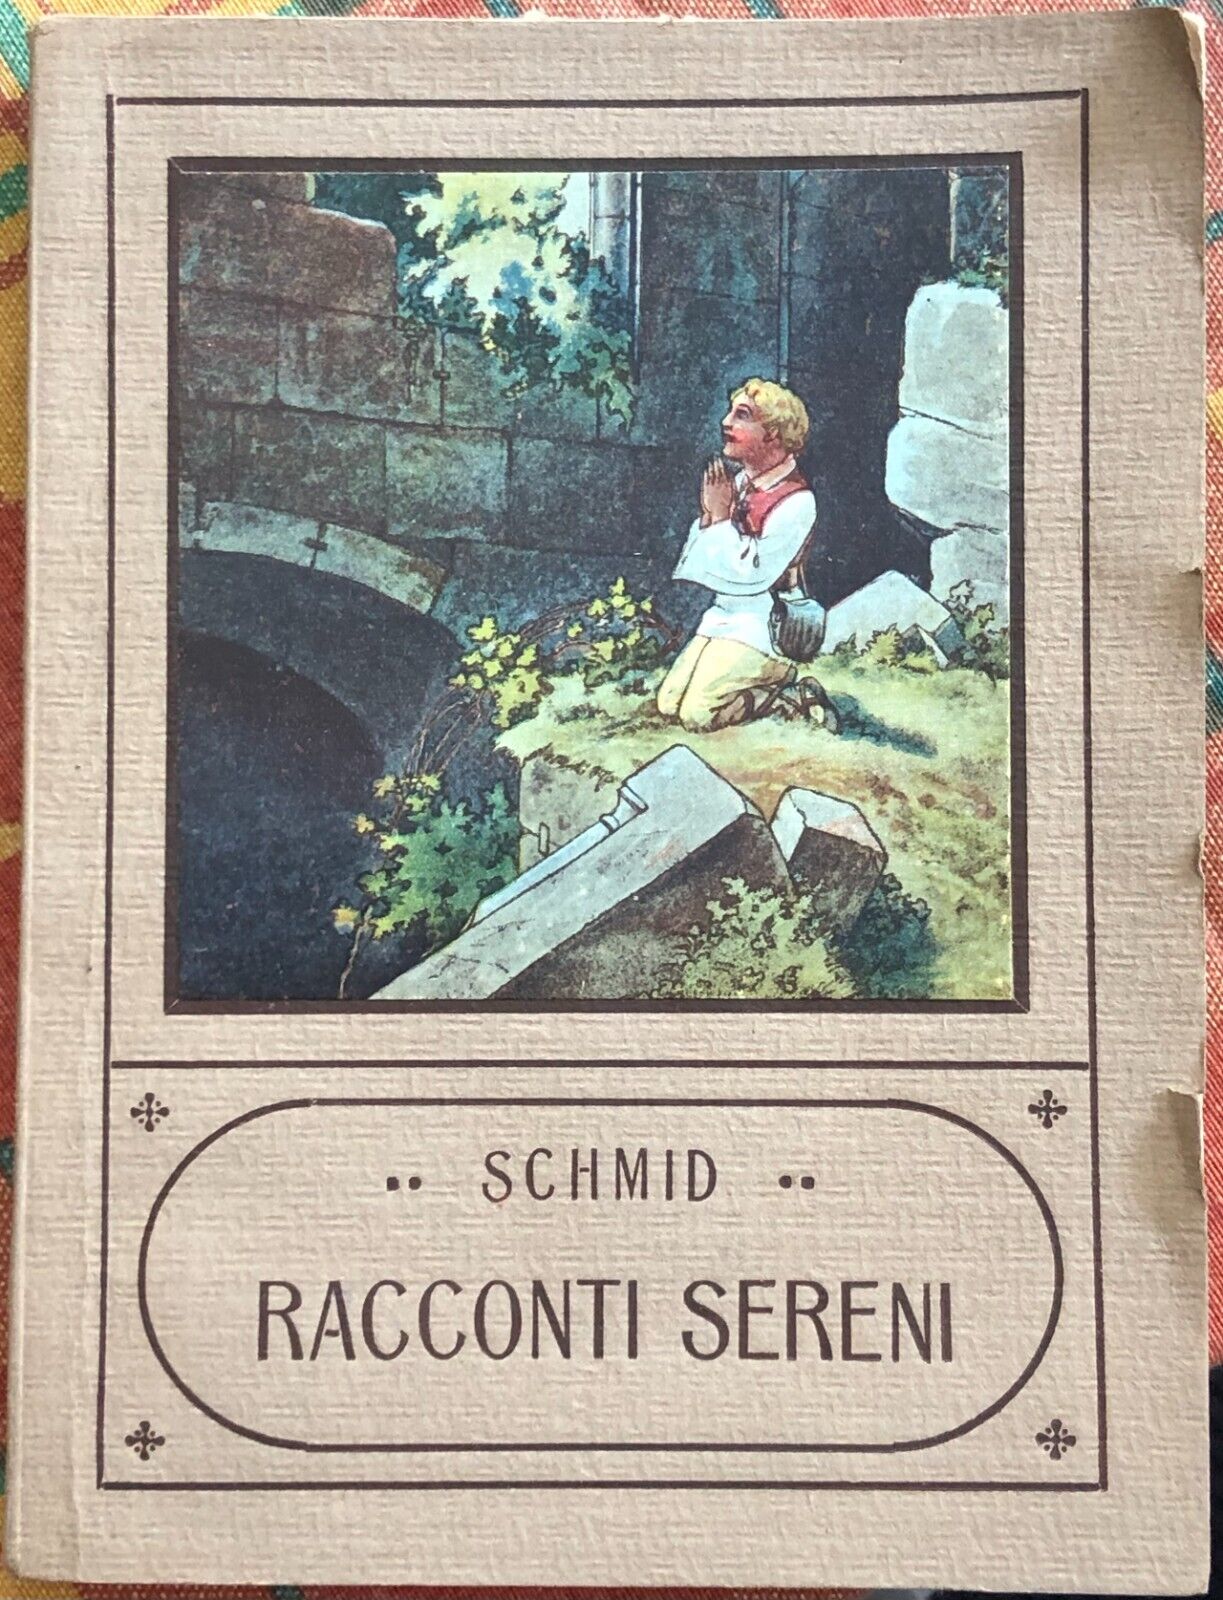  Racconti sereni di Can. Cristoforo Schmid, 1932, Antonio Vallardi Editore Mi